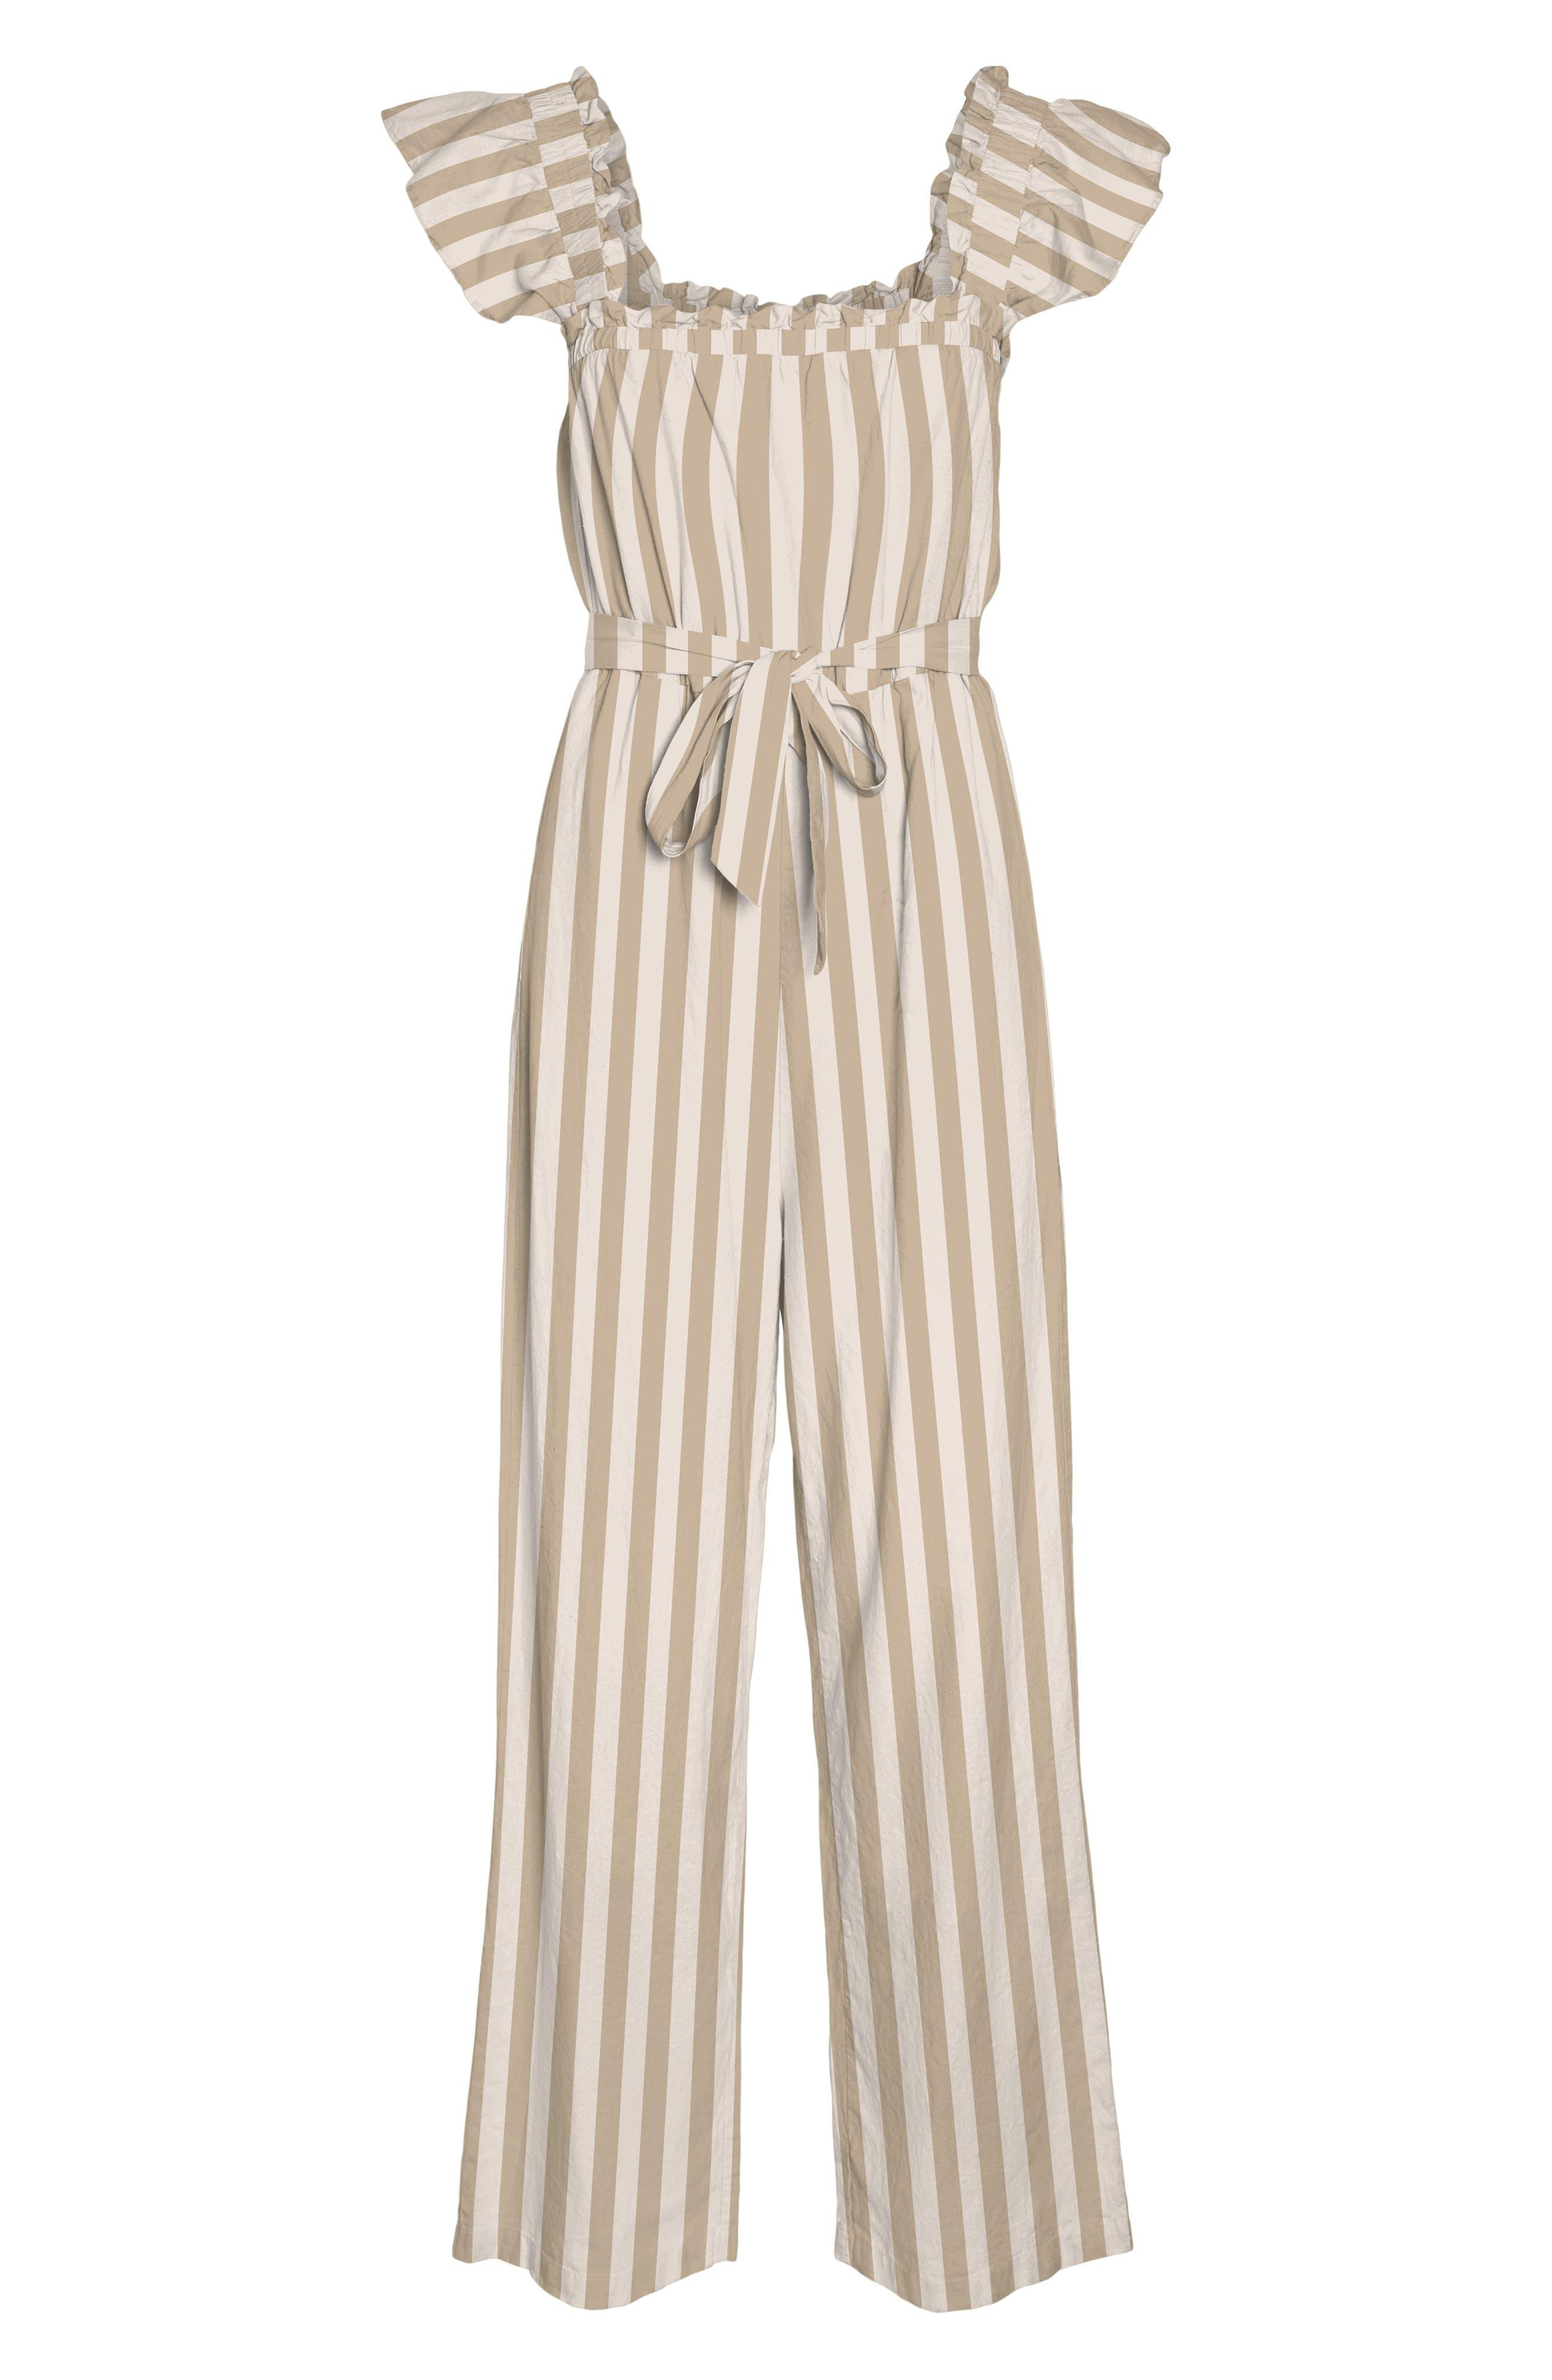 Vero Moda Stripe Ruffle Sleeve Linen & Cotton Jumpsuit in Natural | Lyst